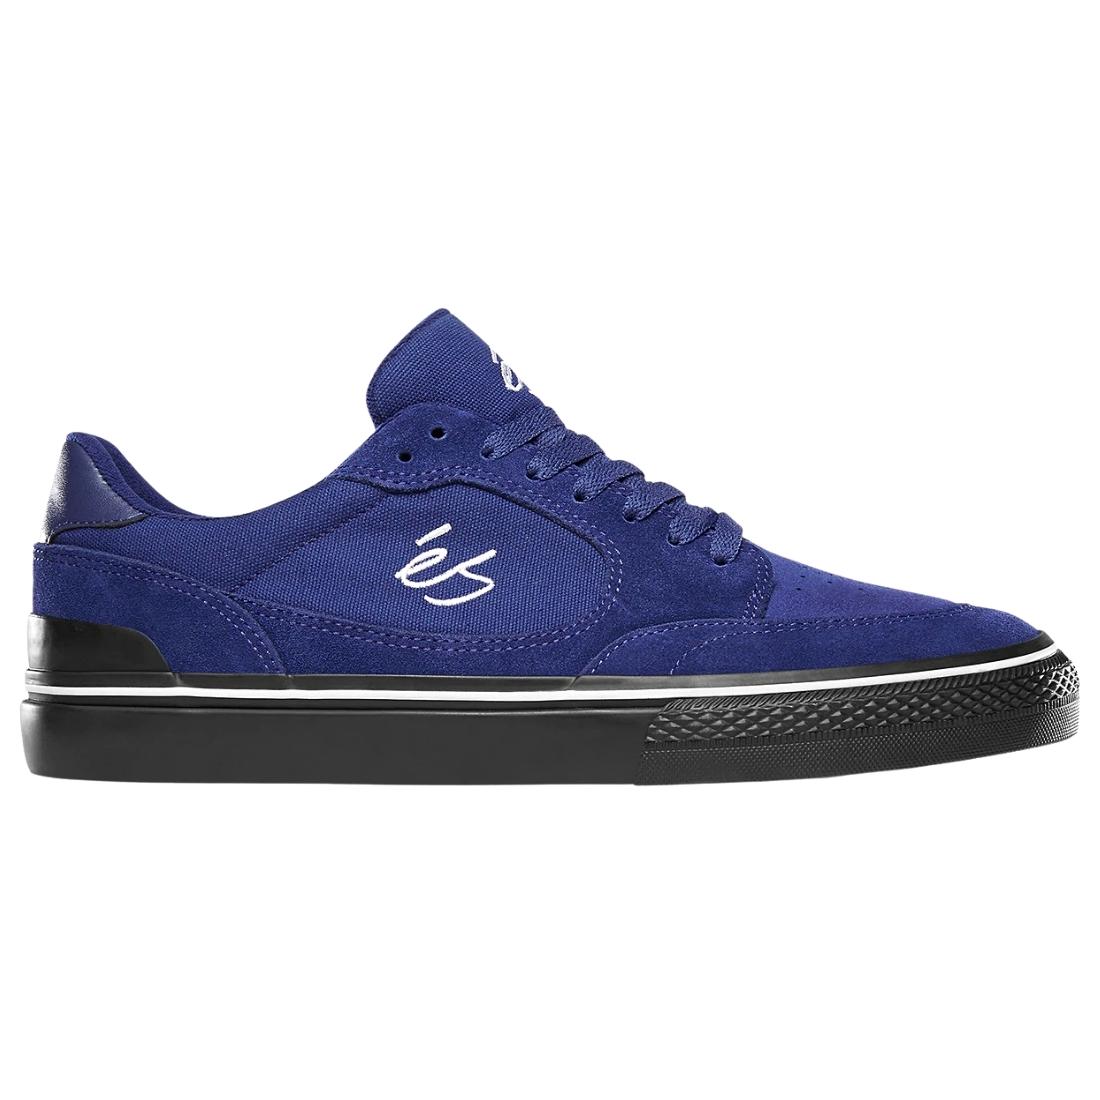 Es Caspian Skate Shoes - Blue/Black - Mens Skate Shoes by eS